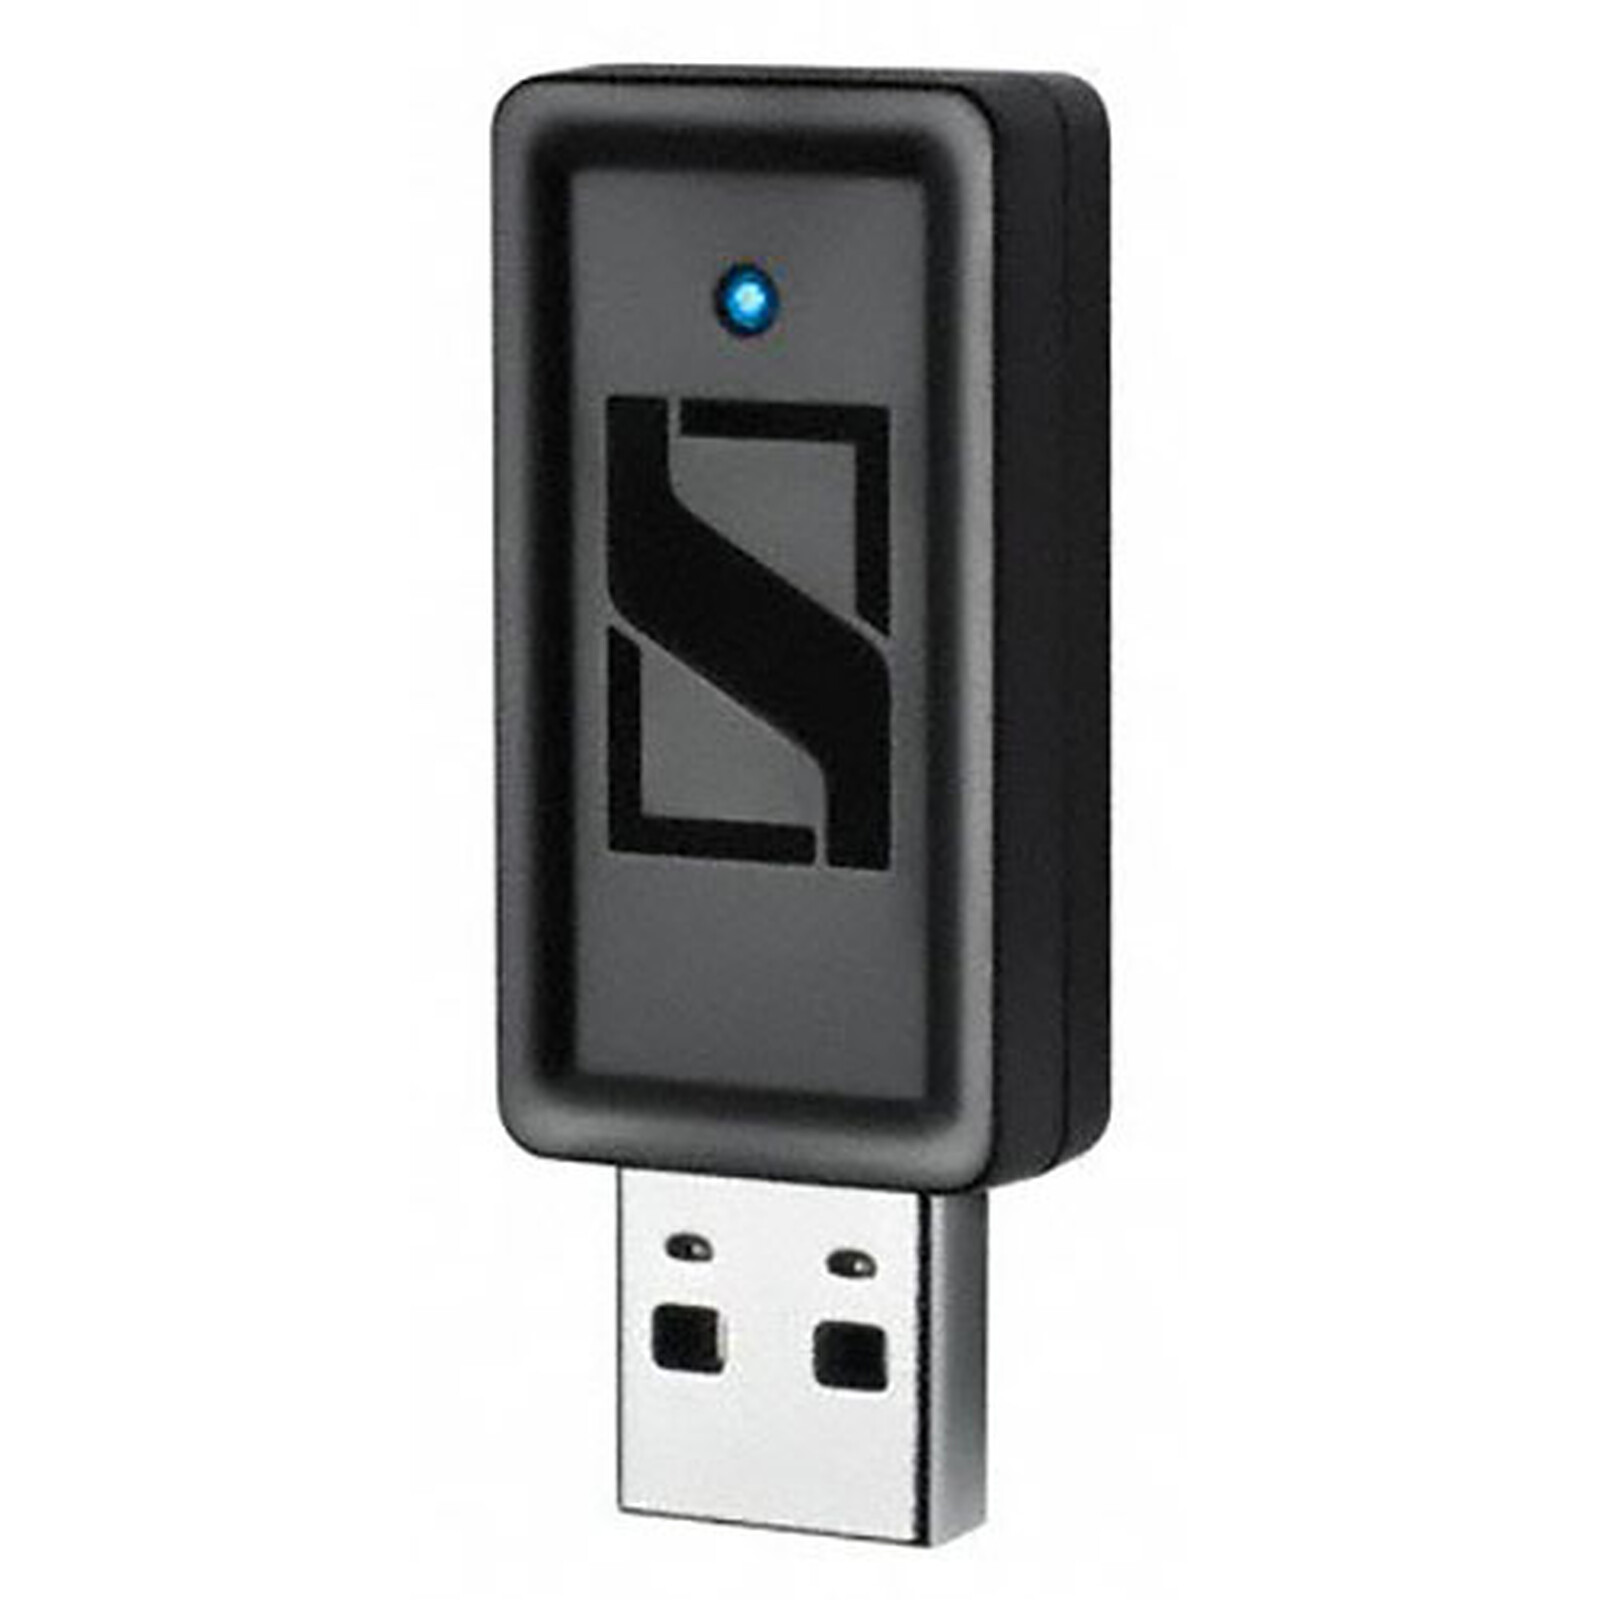 Sennheiser BTD 500 USB - Bluetooth Sennheiser on LDLC | Holy Moley